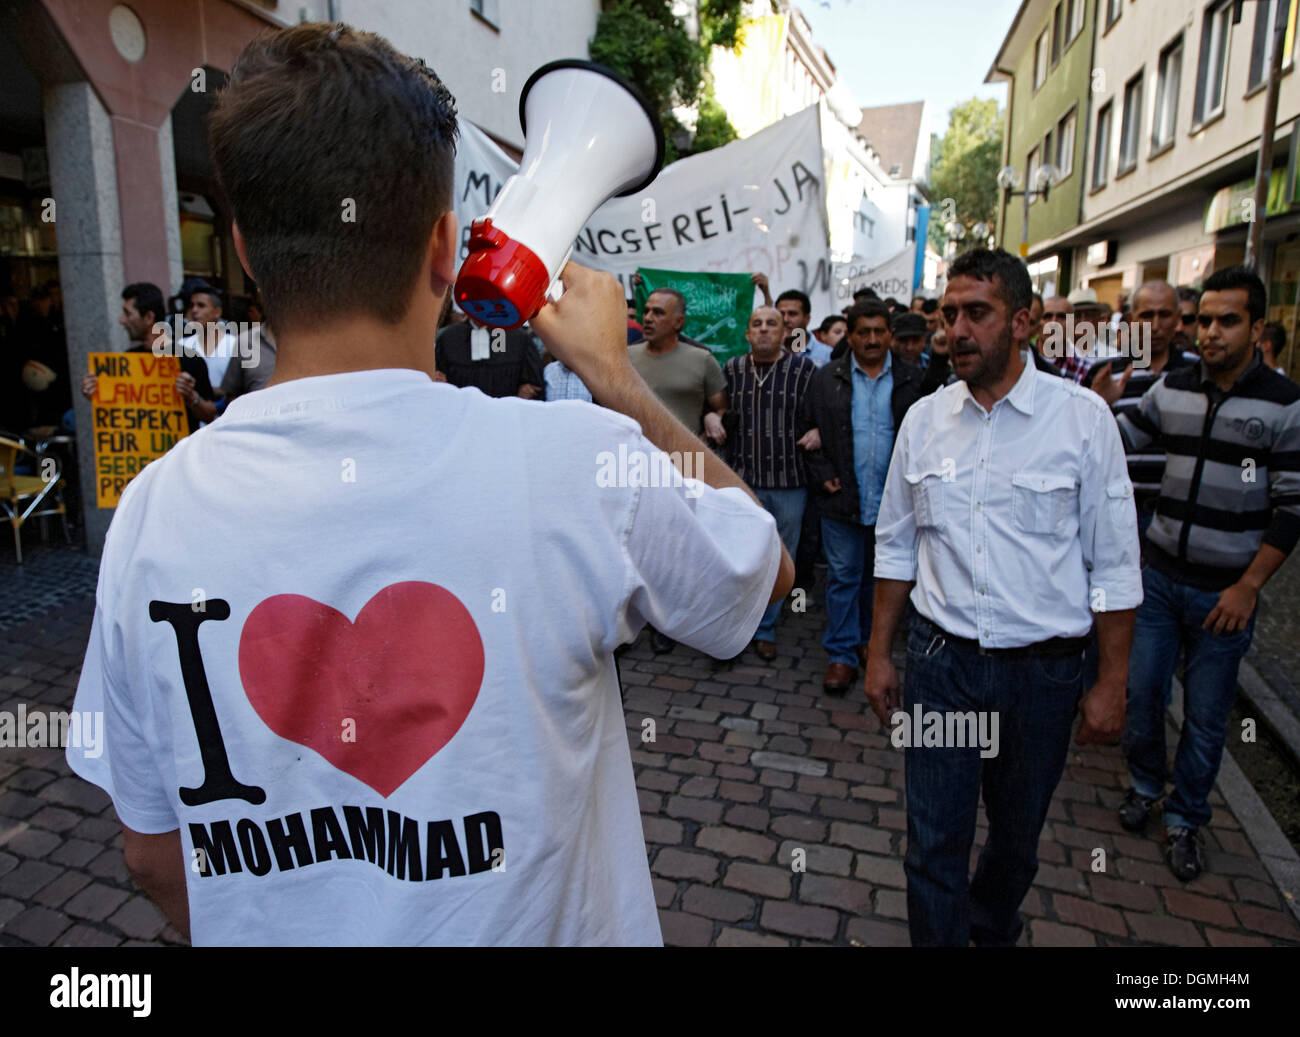 Les musulmans qui manifestaient pacifiquement contre la vidéo diffamatoire Muhammad à Freiburg, Bade-Wurtemberg Banque D'Images